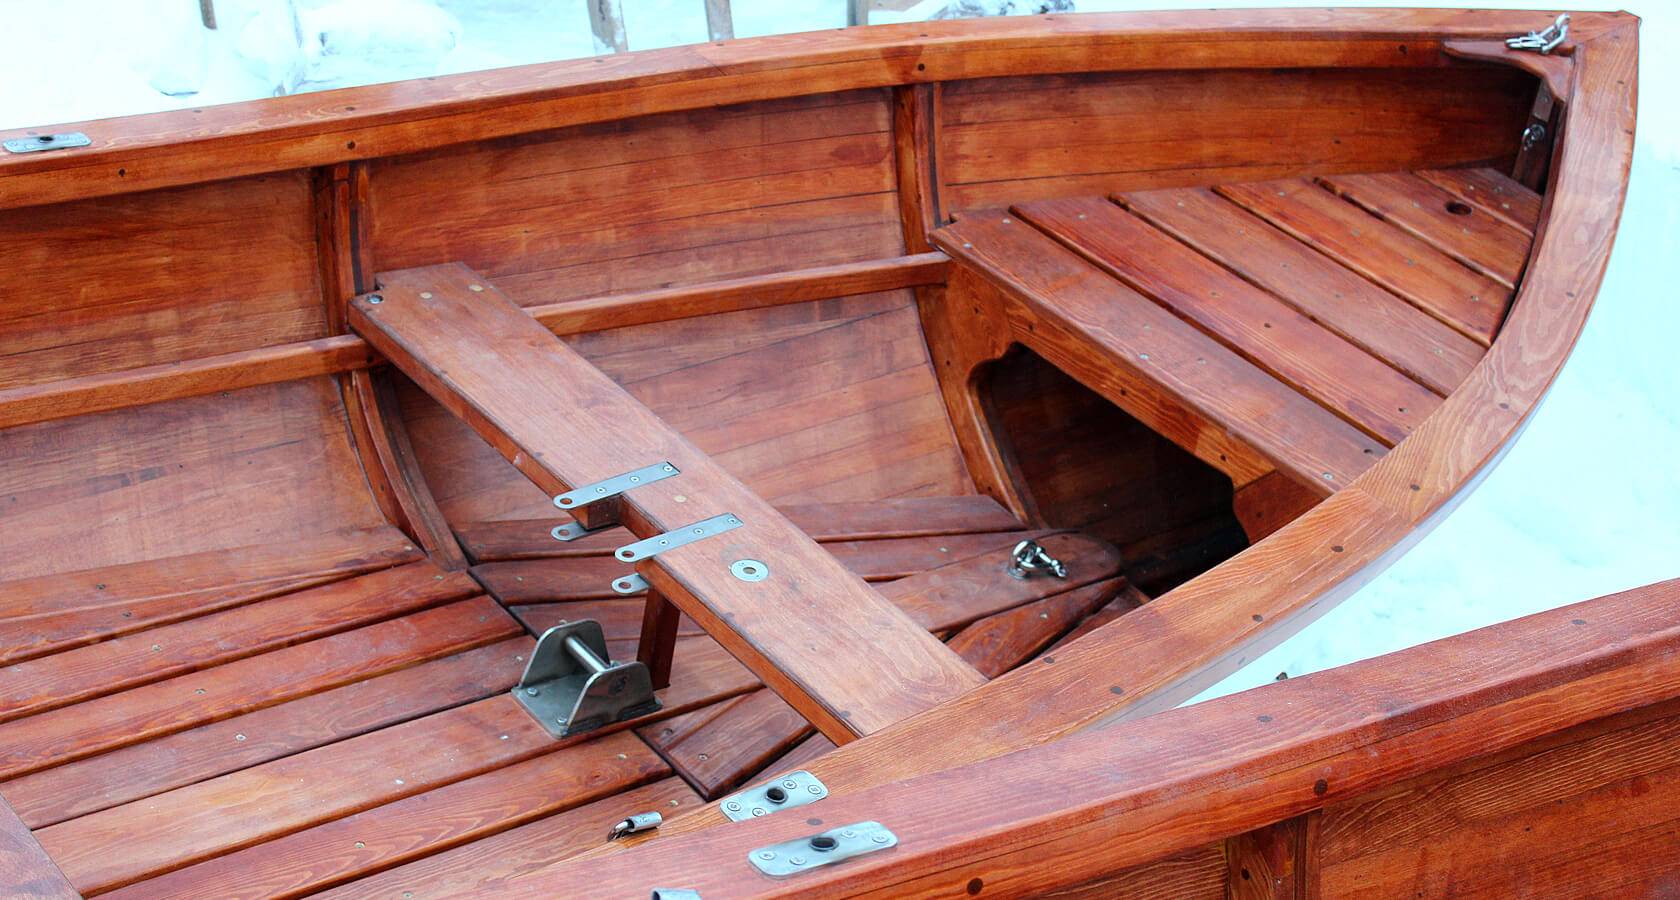 Стеклопластиковая лодка своими руками пошаговая инструкция. изготовление лодки своими руками: из стеклопластика, фанеры или пенопласта?